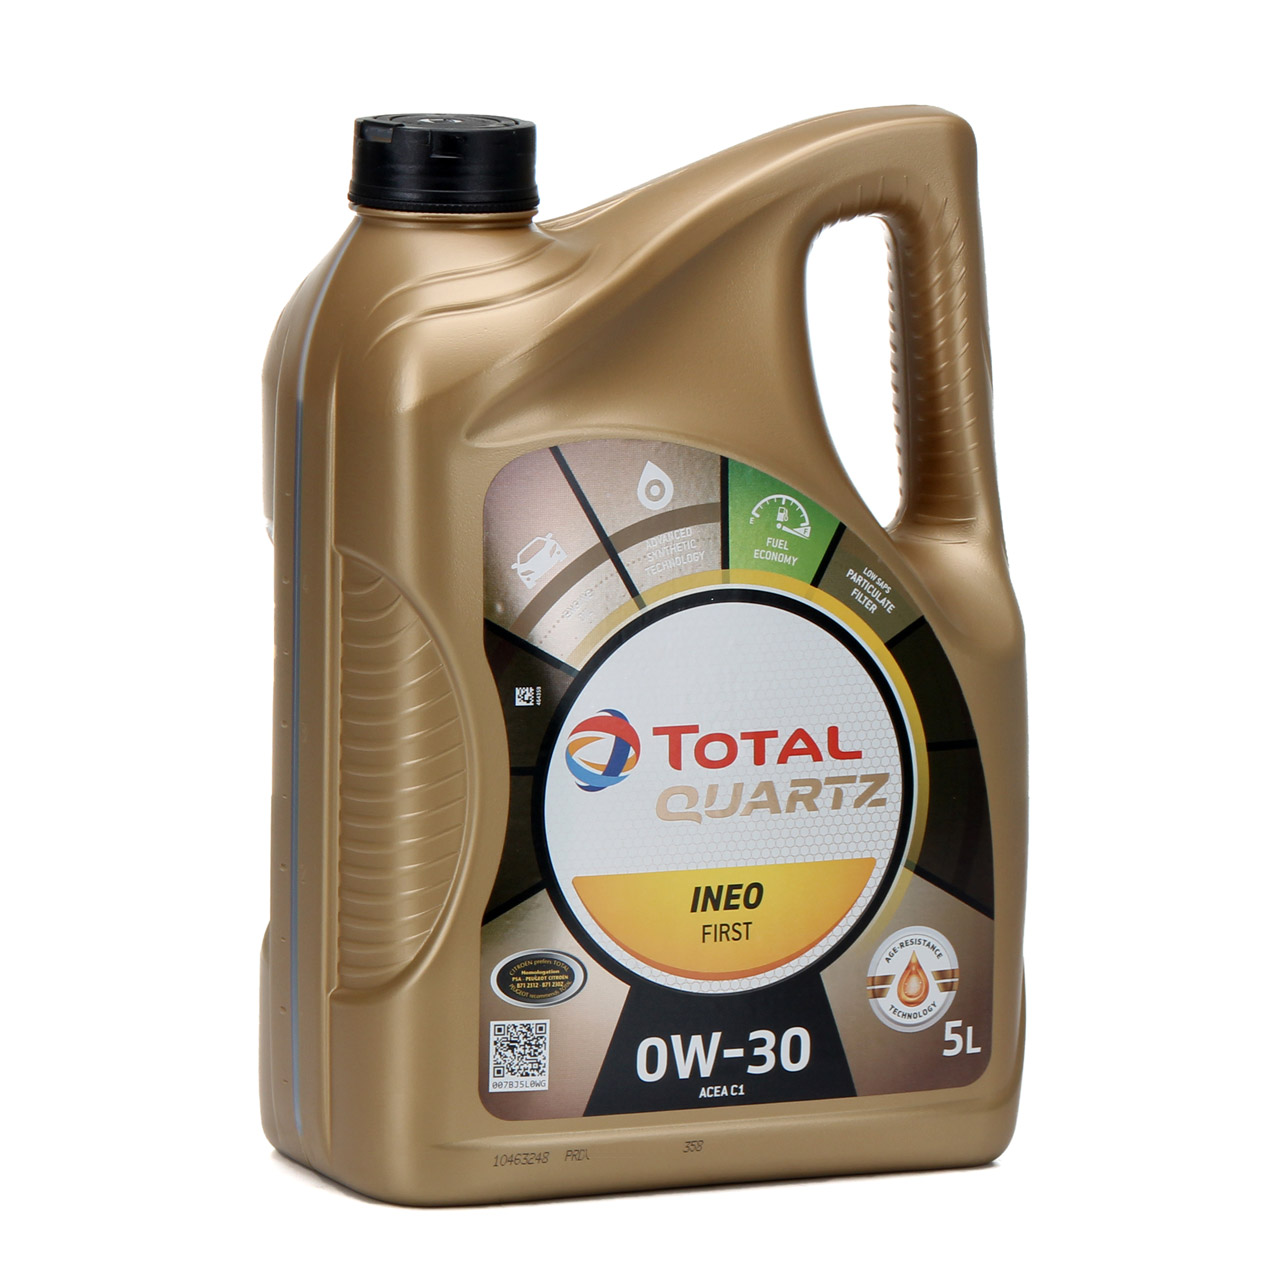 TOTAL QUARTZ INEO FIRST Motoröl Öl 0W-30 ACEA C1 C2 PSA B71 2312 - 5L 5 Liter